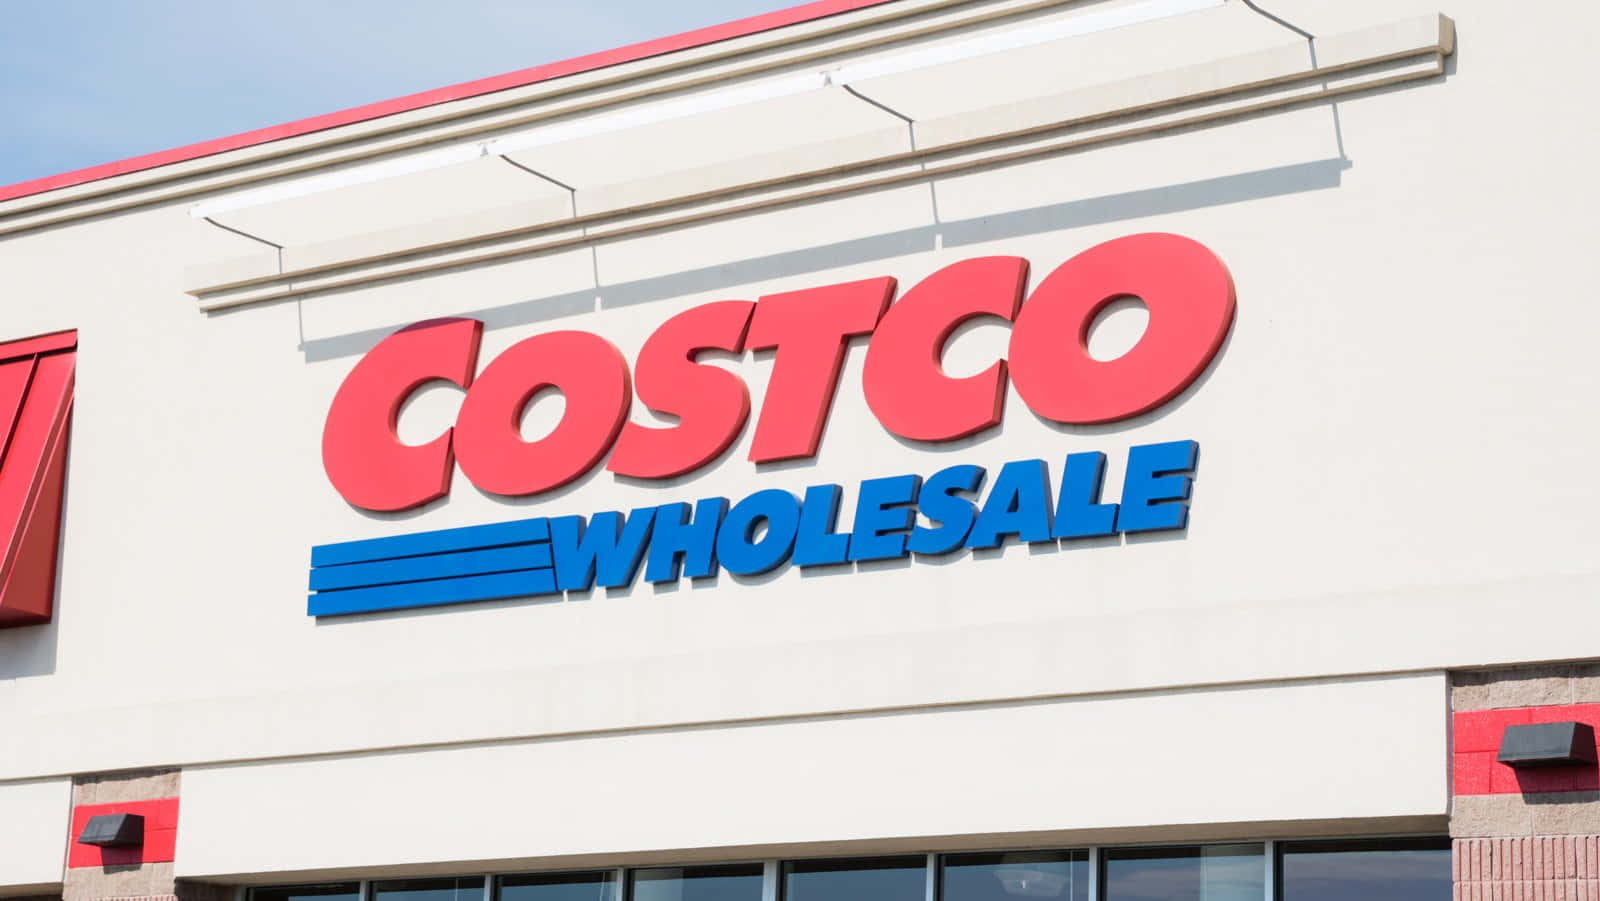 Costco Wholesale Store In A City